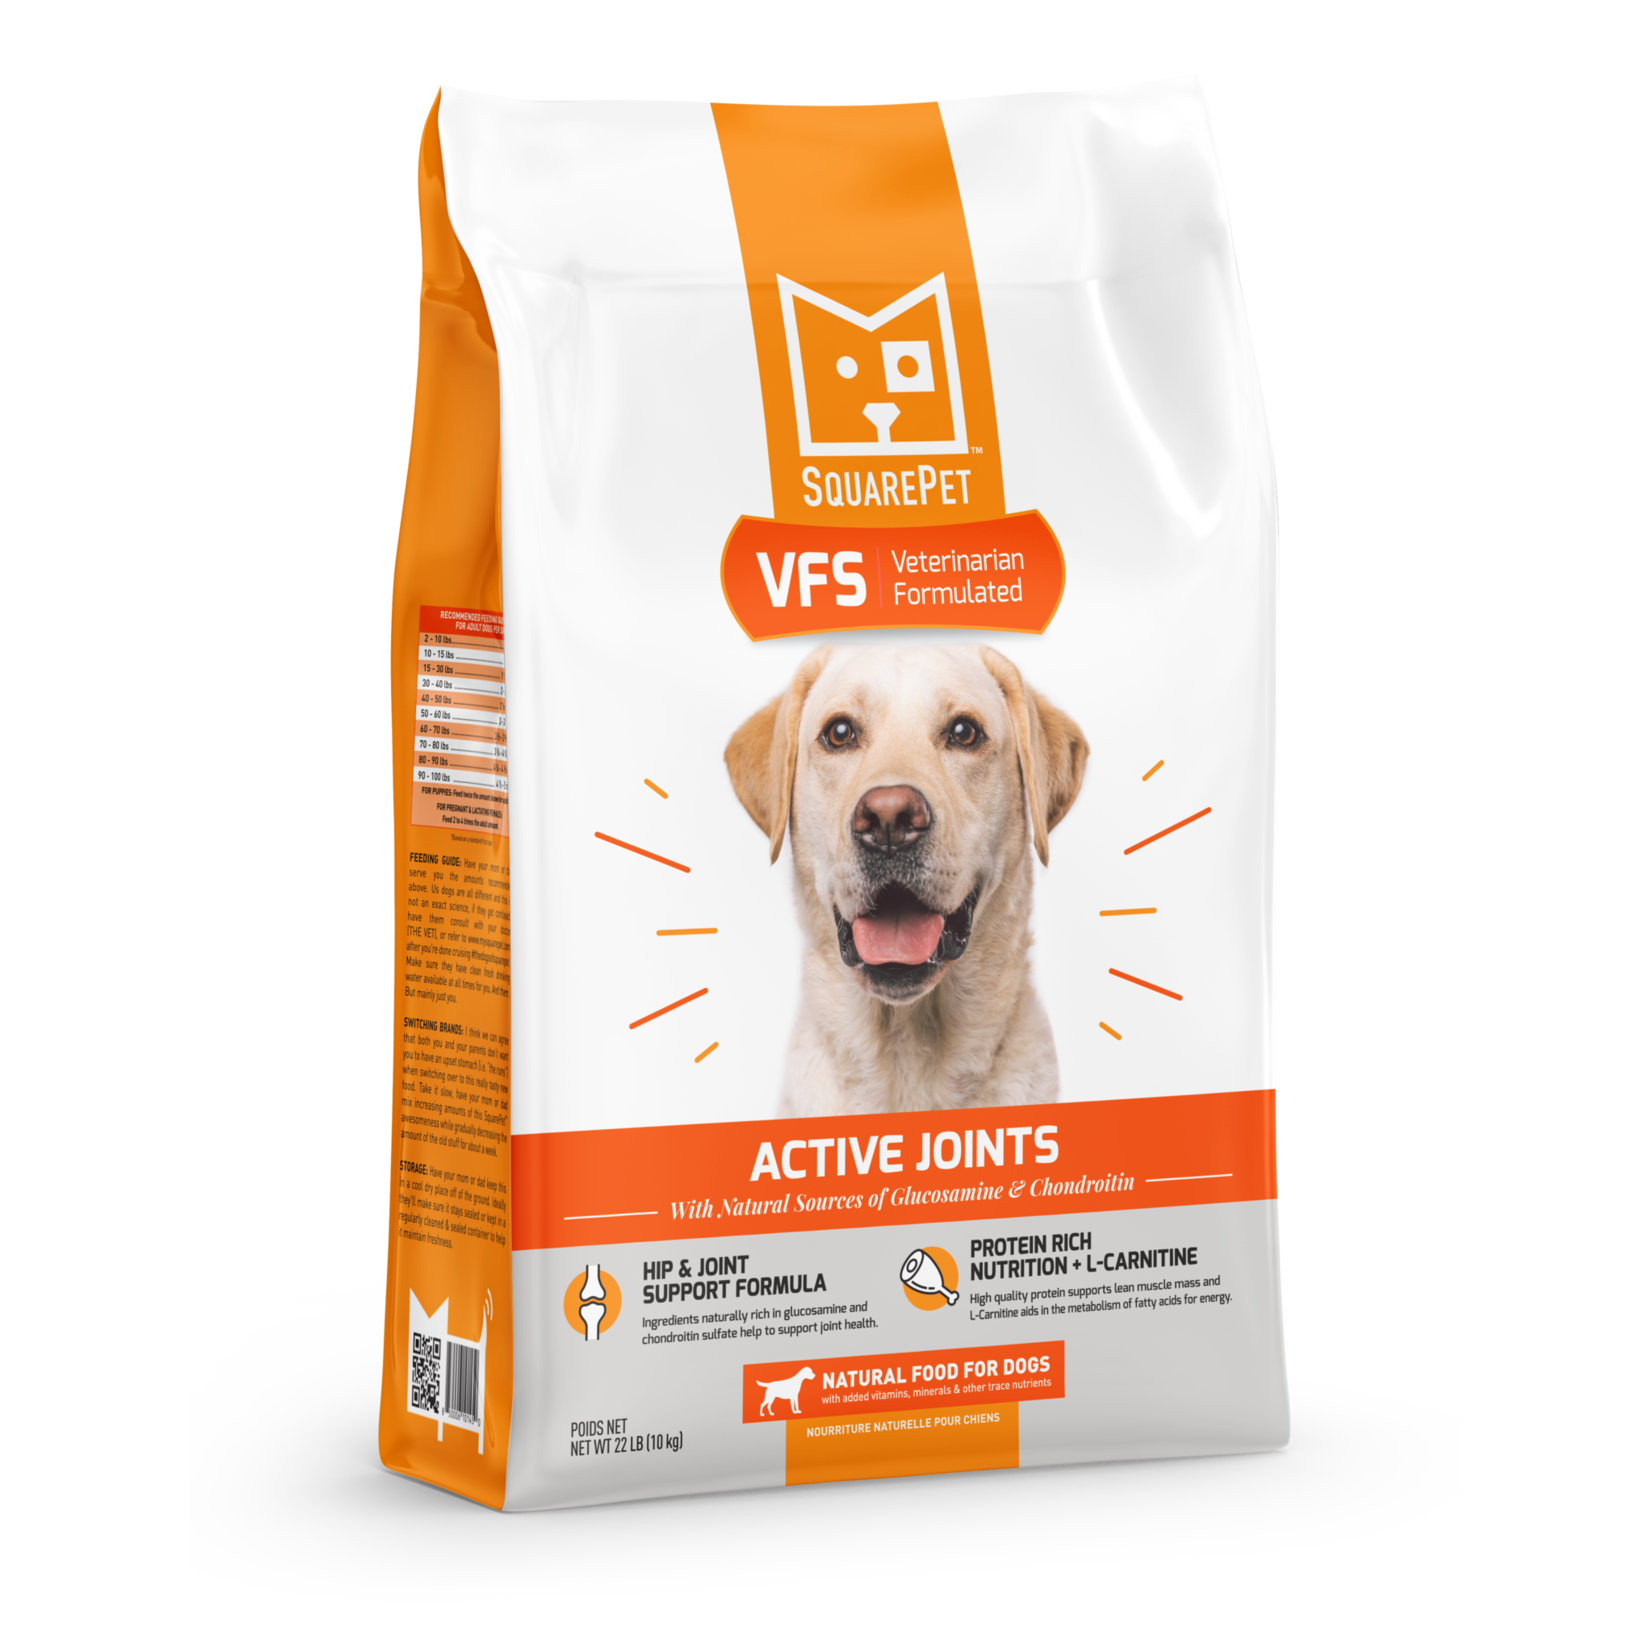 SquarePet Squarepet VFS Active Joints Dog Food